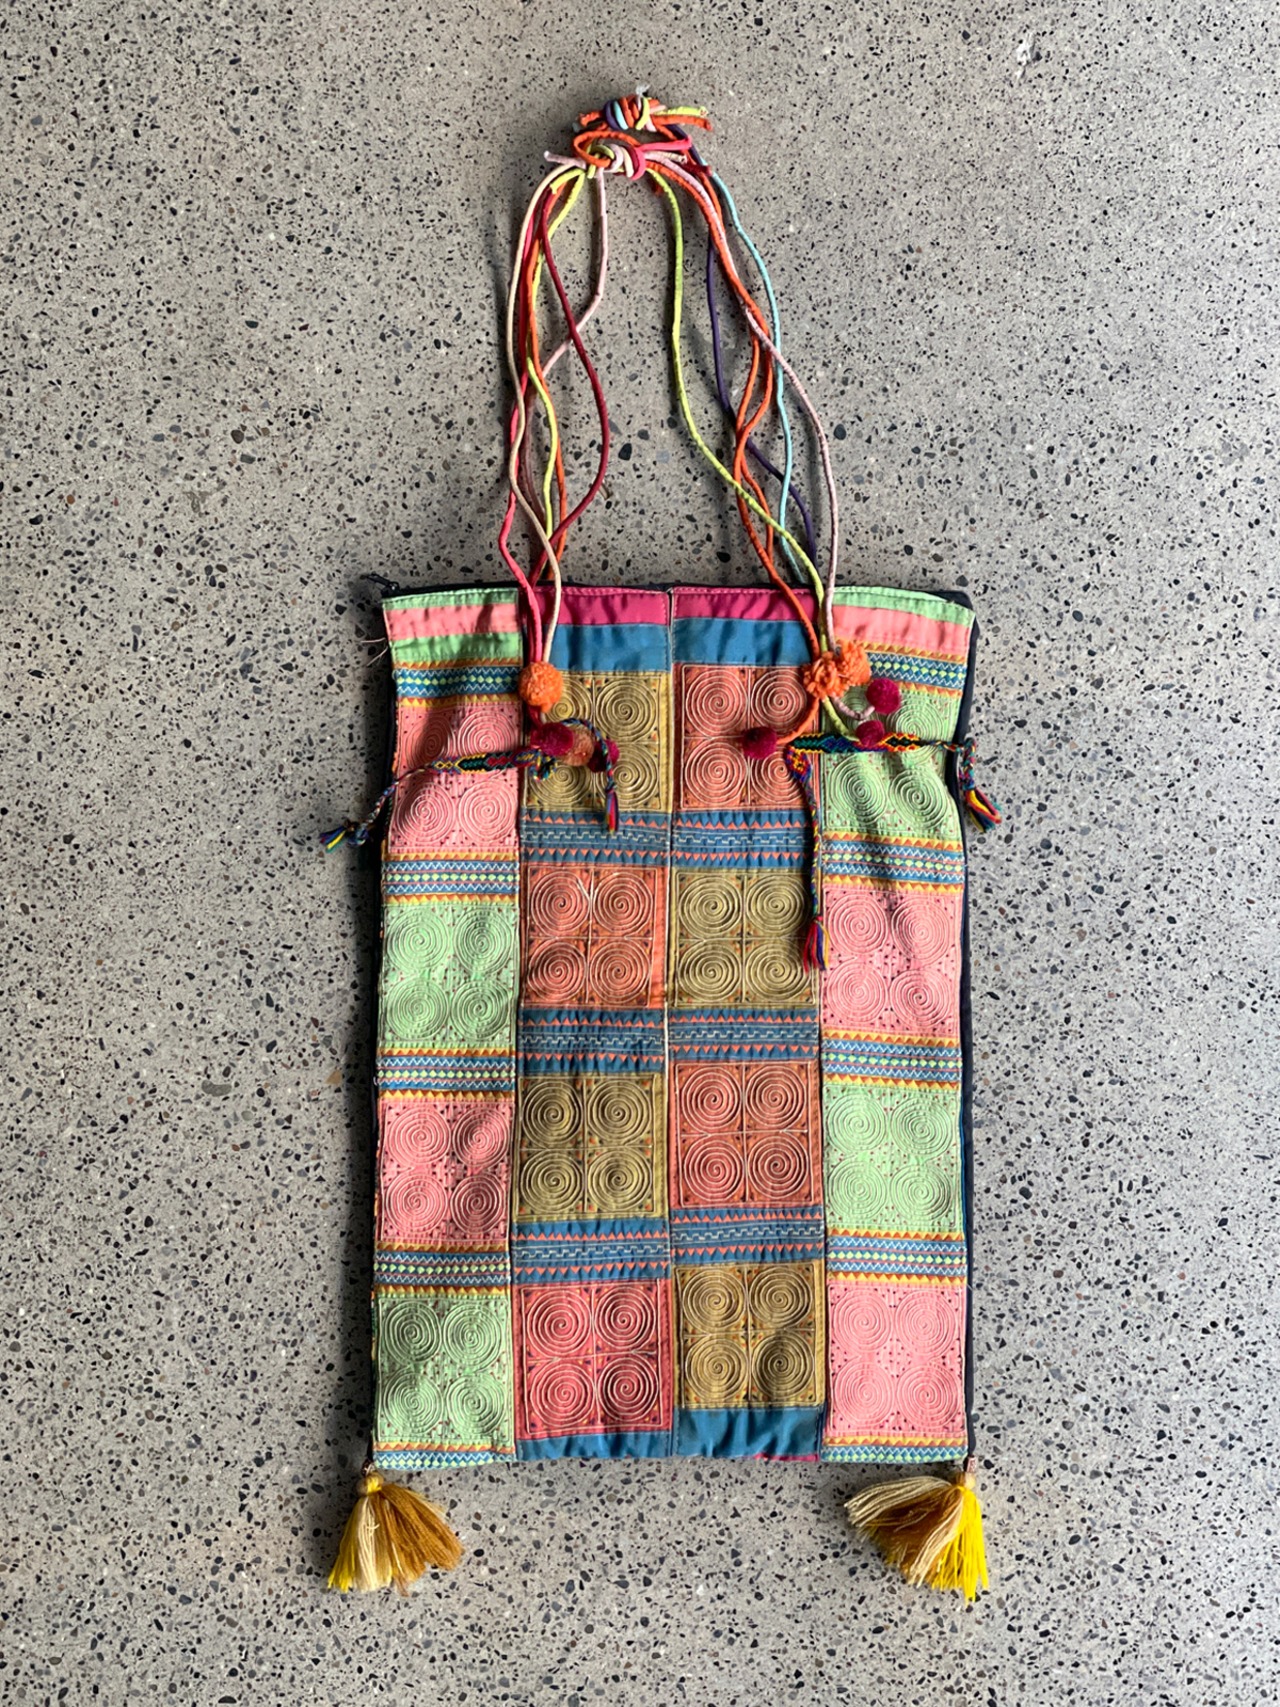 H'mong tribe／Vintage fabric bag